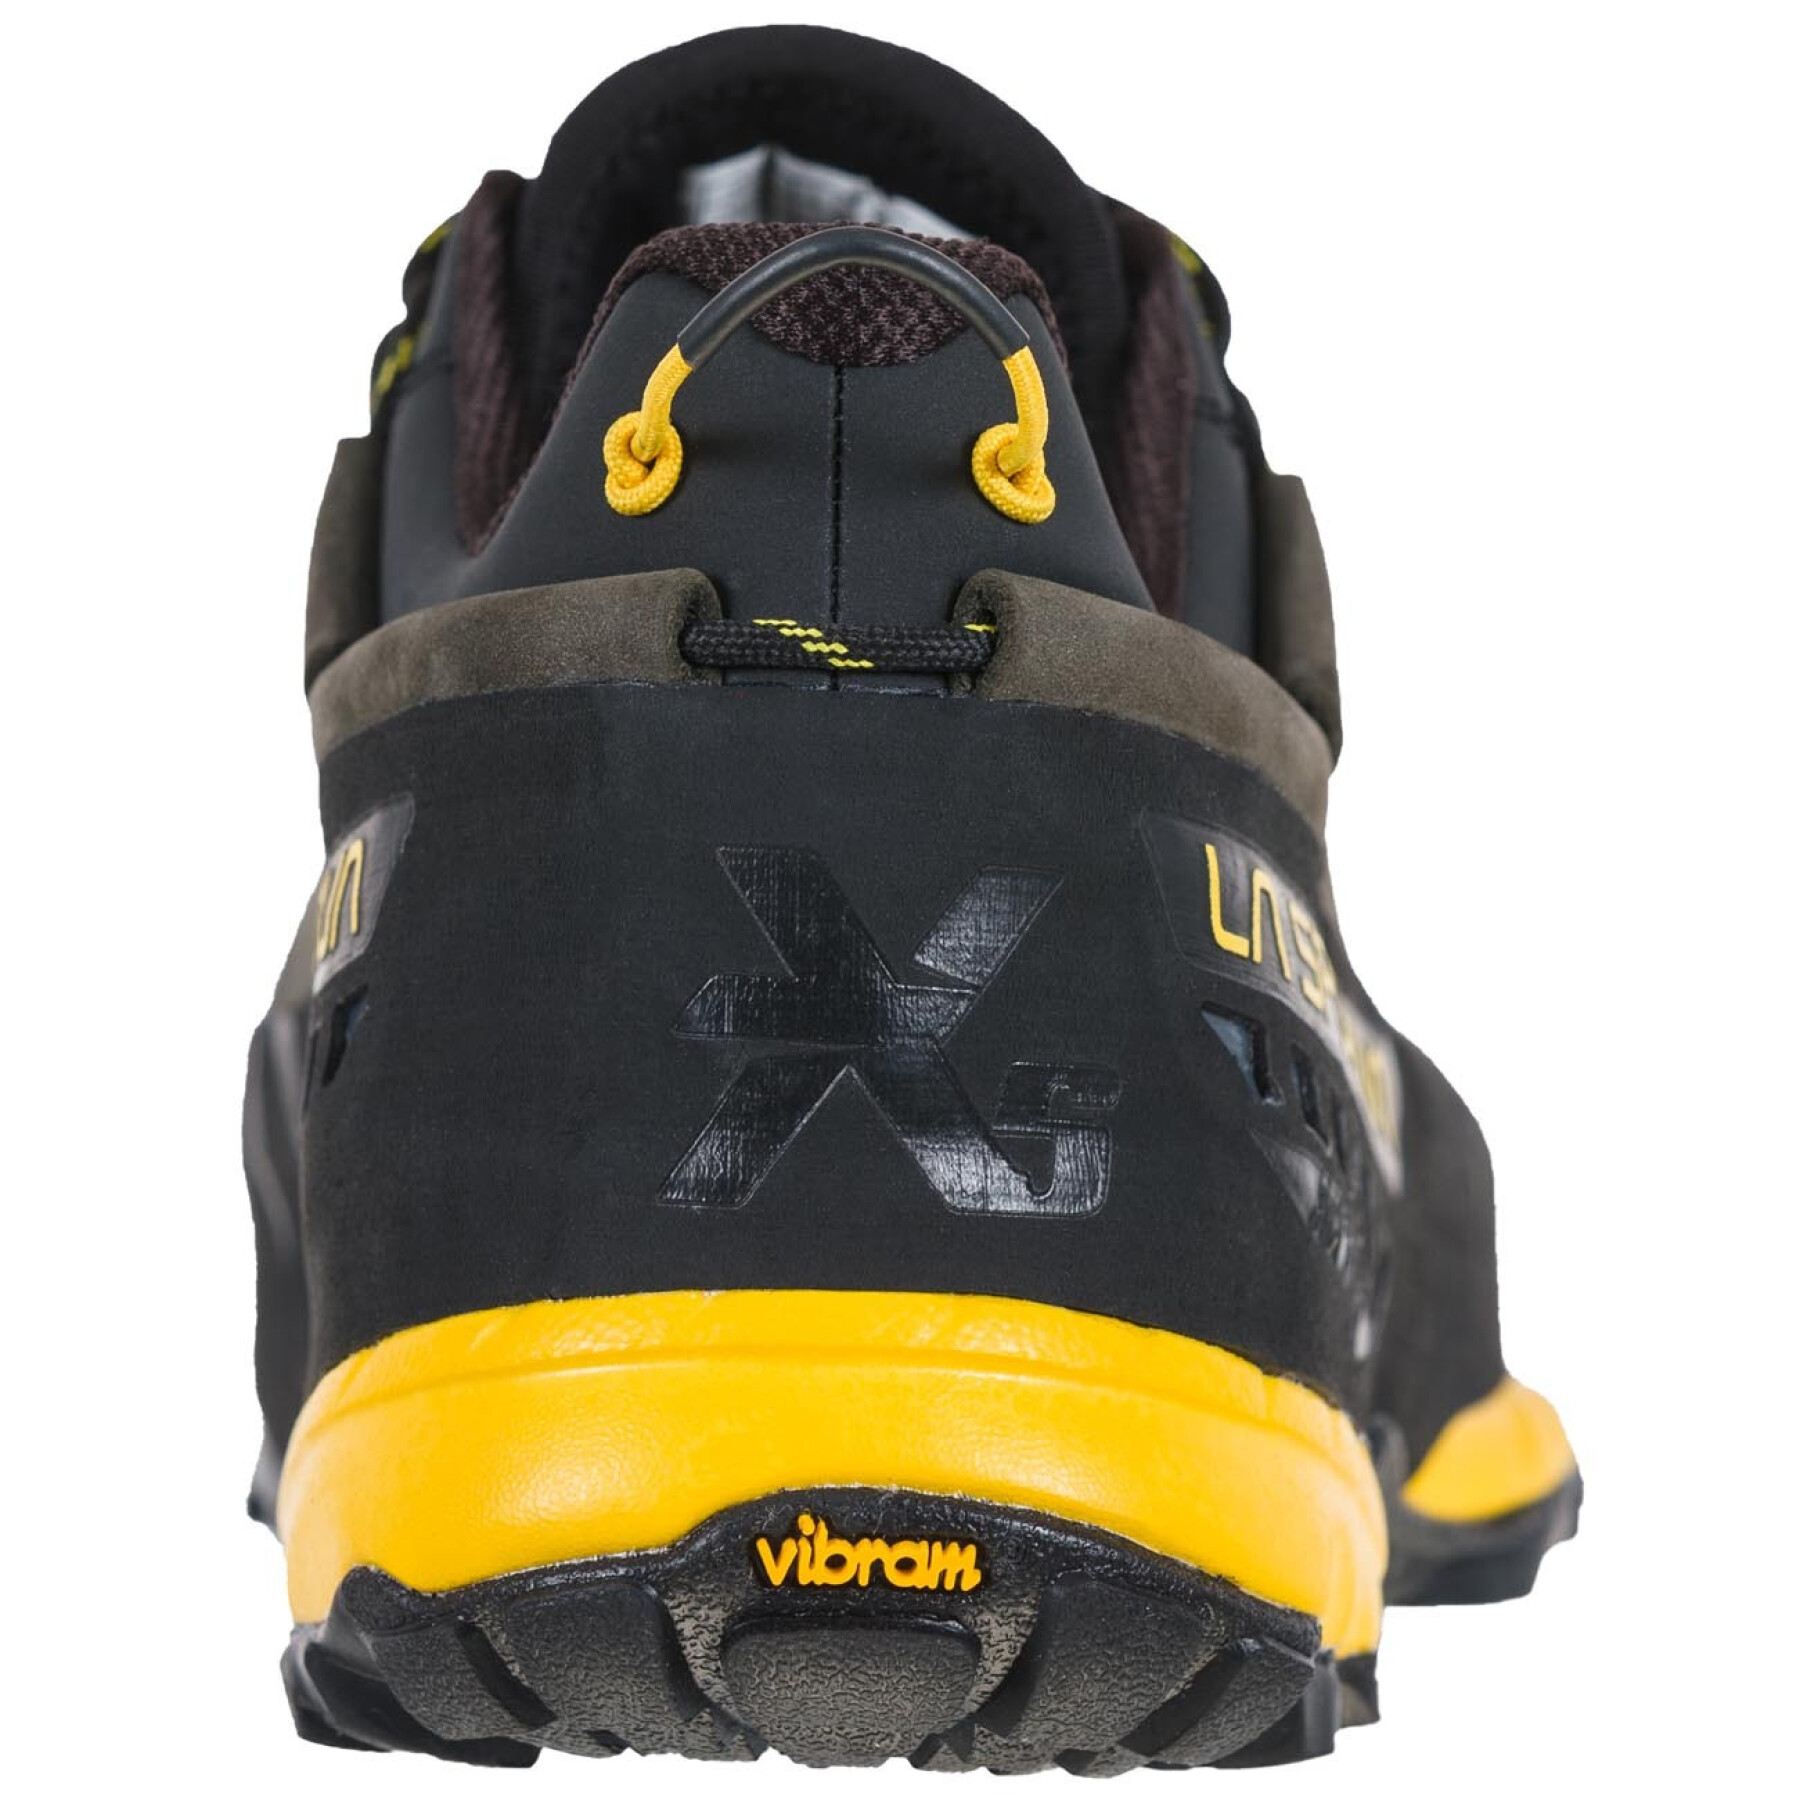 Chaussures de randonnée La Sportiva TX5 Low GTX